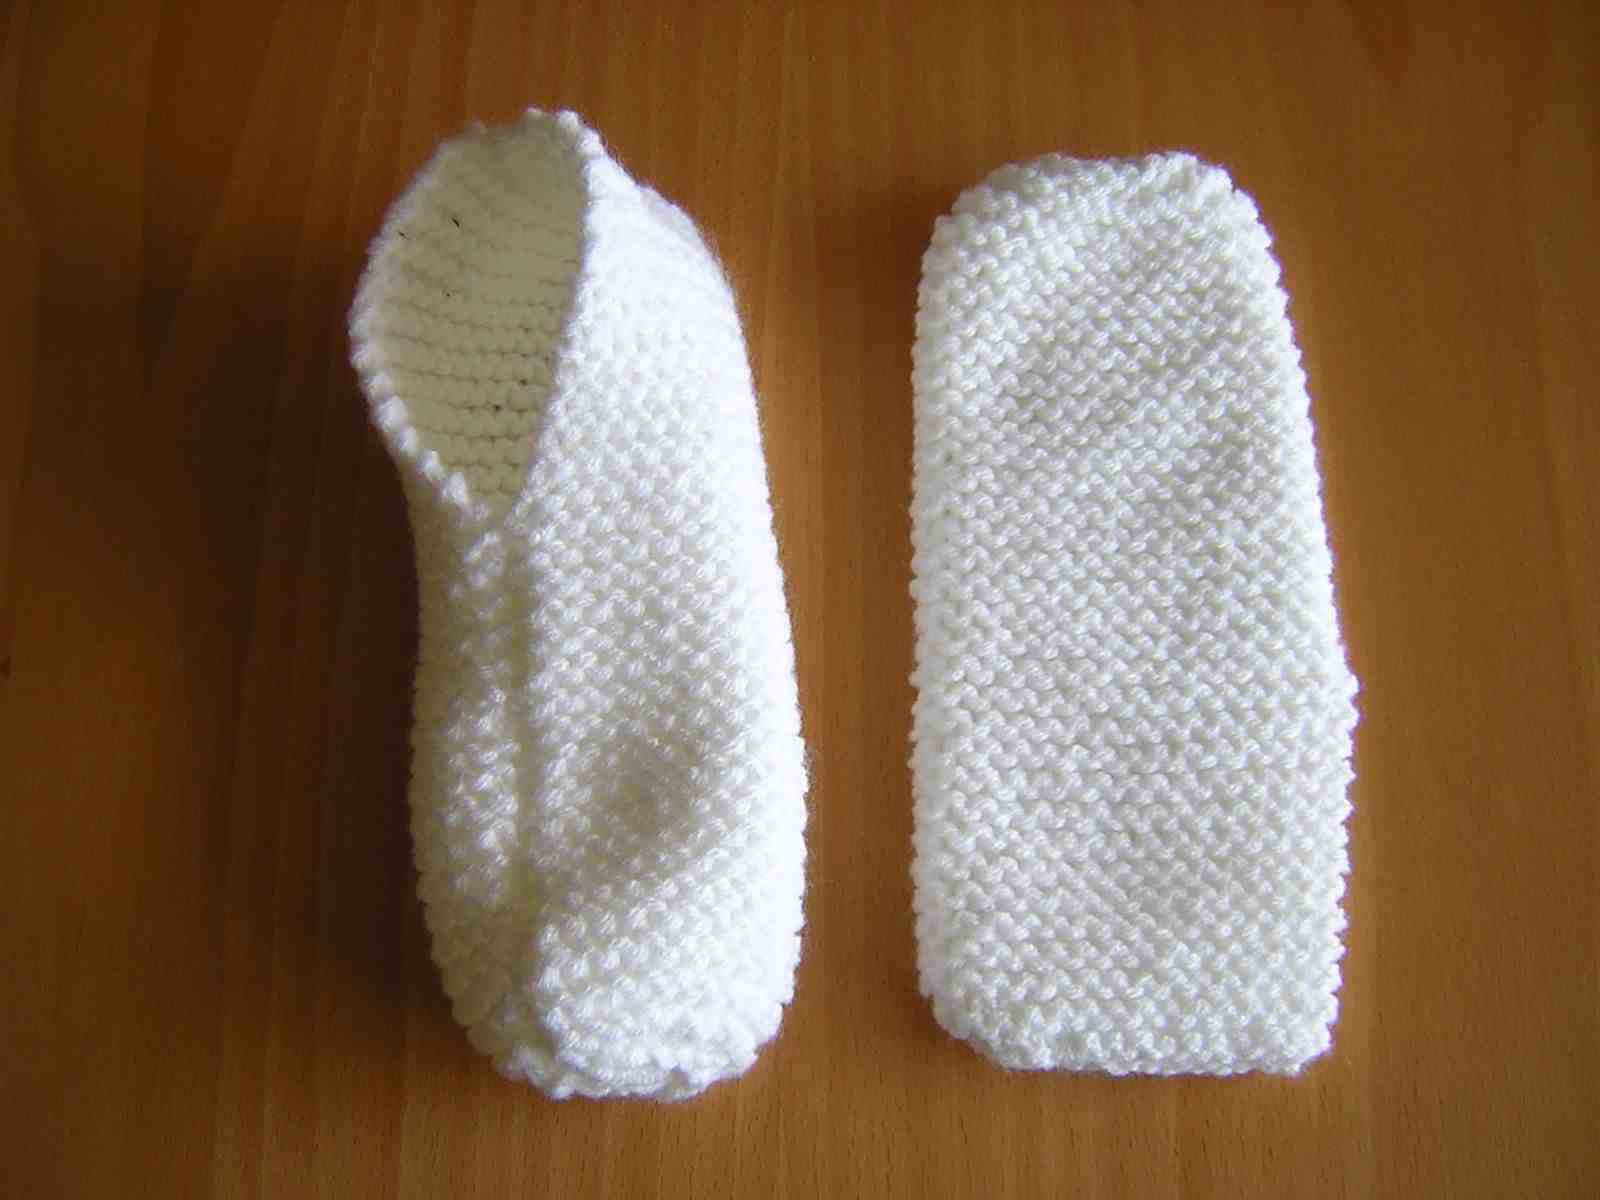 Comment tricoter facilement des chaussons pour bébé?